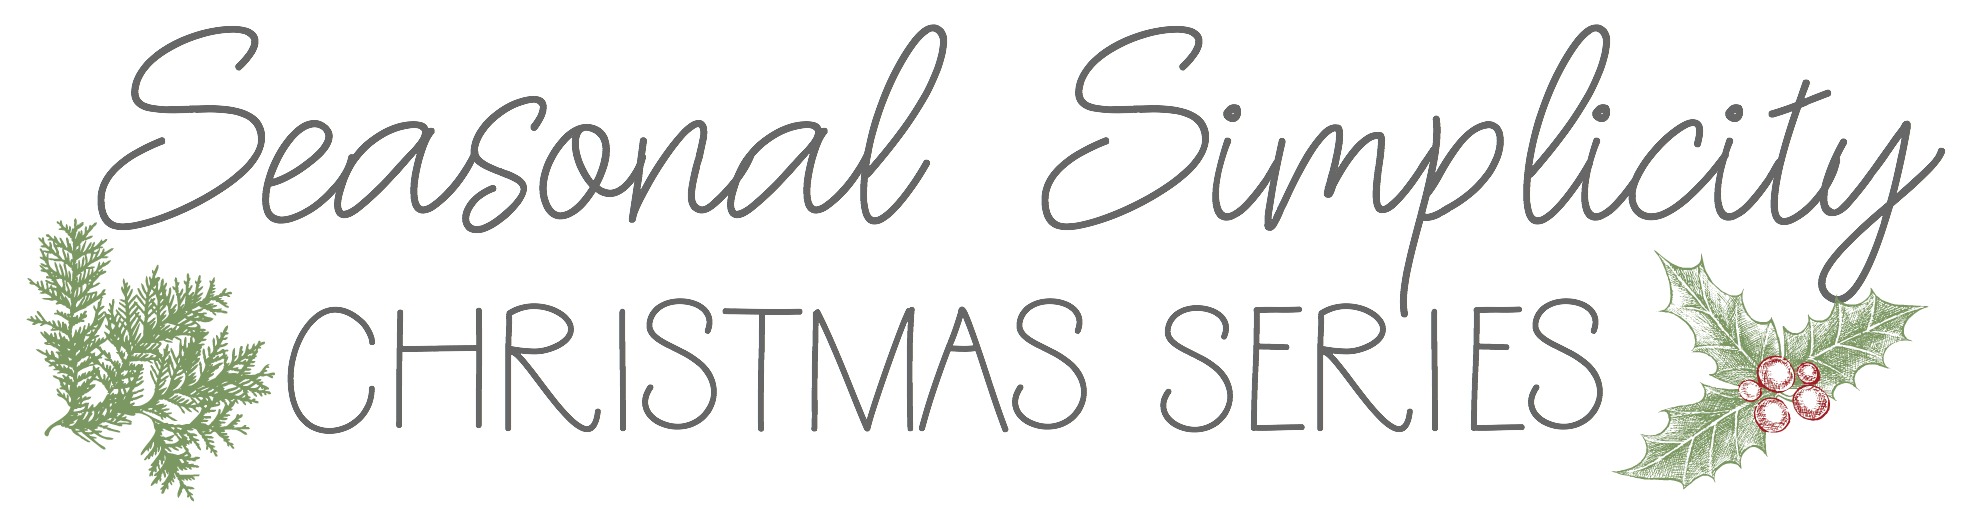 Seasonal Simplicity Series for Christmas (text image)